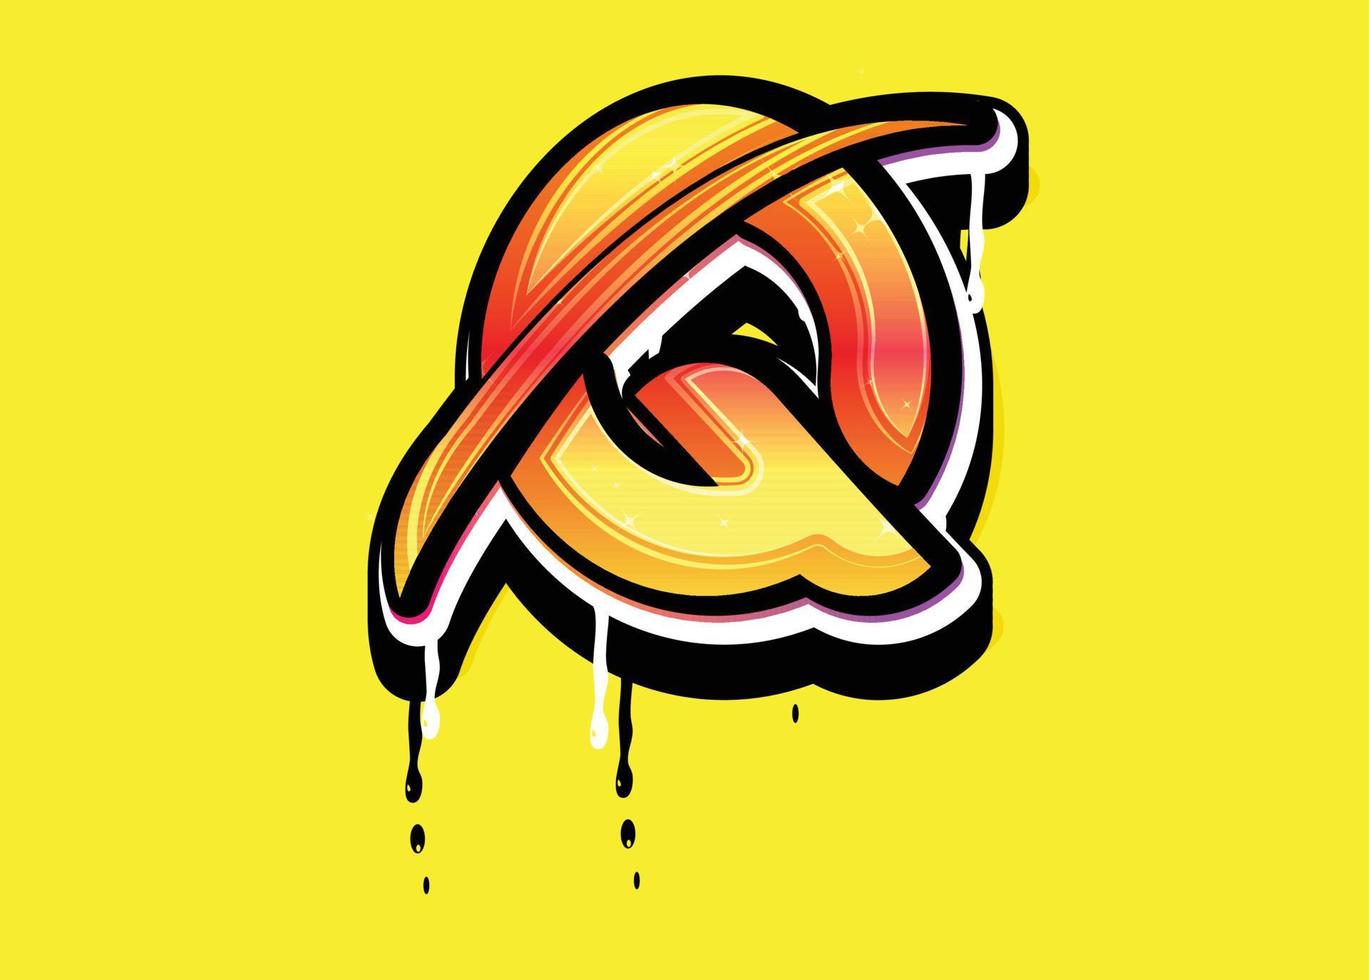 q letter swoosh-logo met druppeleffect vector